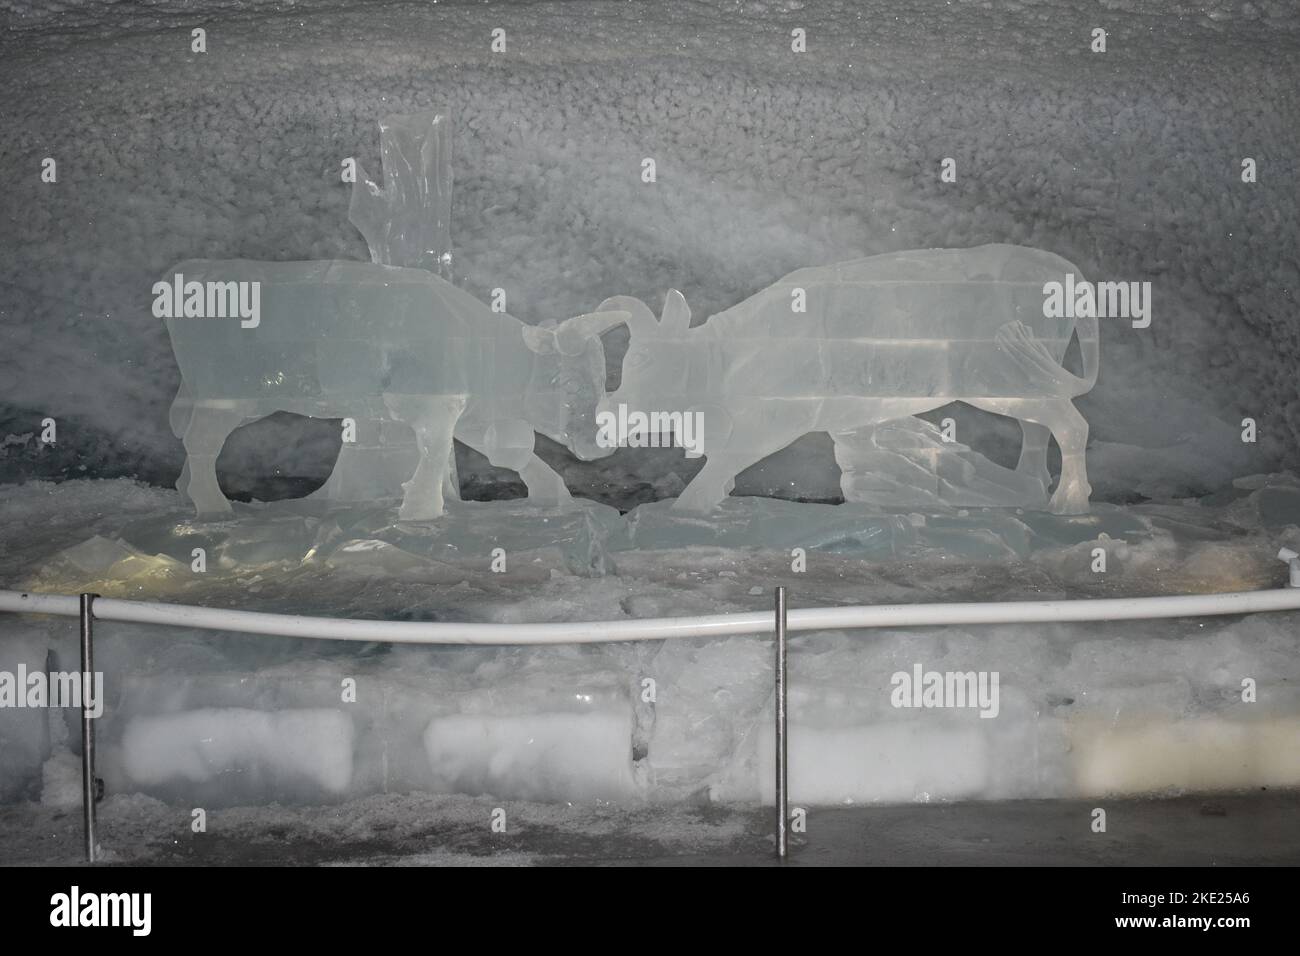 Photo prise à l'intérieur du paradis du glacier de matterhorn ; sculpture faite de glace à l'intérieur du glacier et photo du salon de glace 2018 Banque D'Images